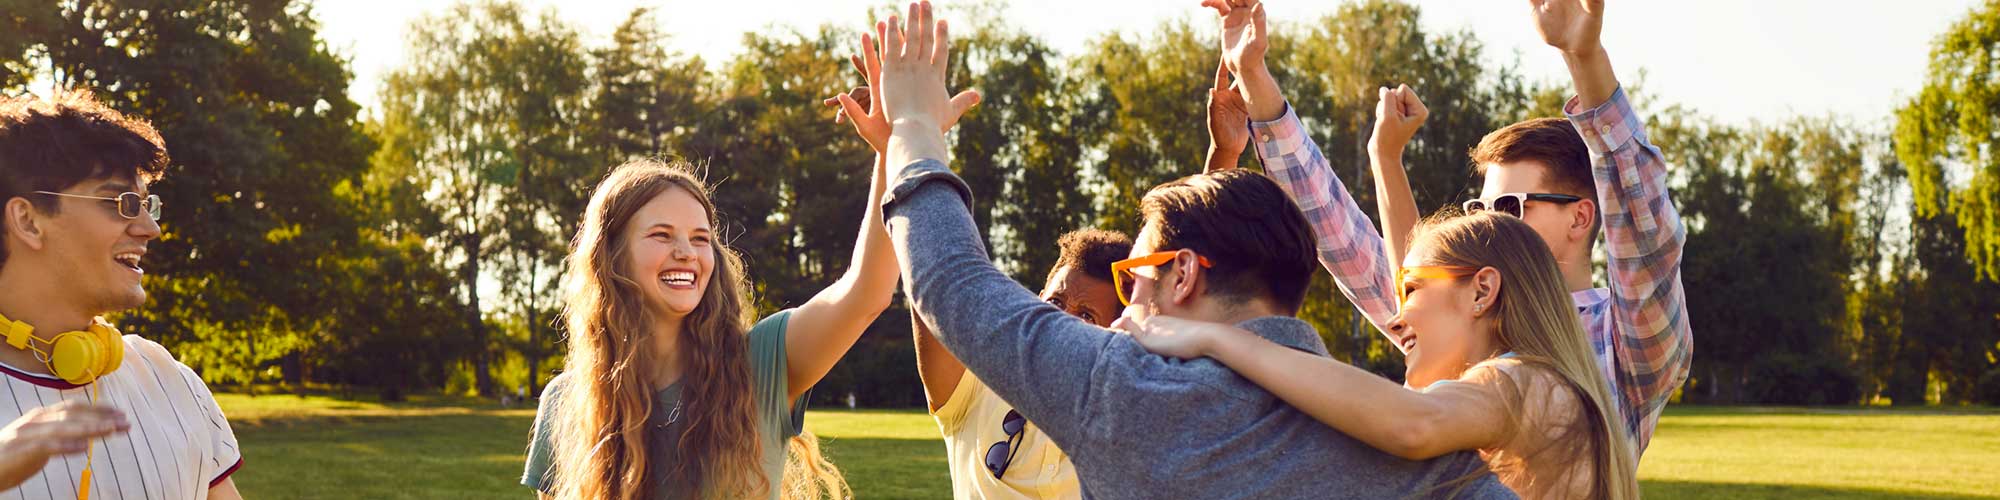 Gruppe junger, fröhlicher Menschen im Park geben sich High-five